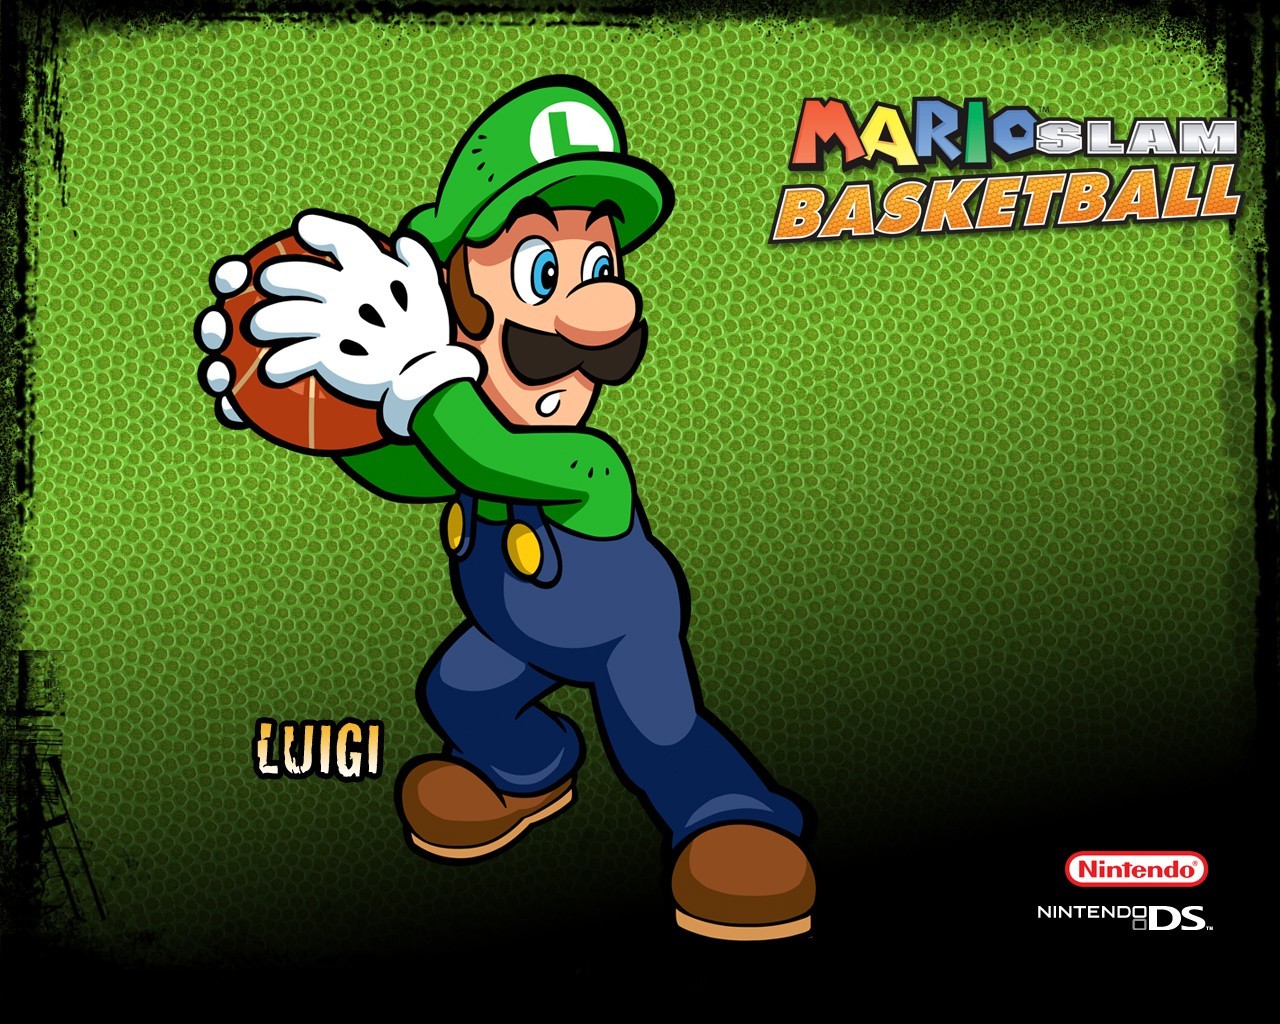 Astuces de Mario Slam Basketball • Mario Universalis